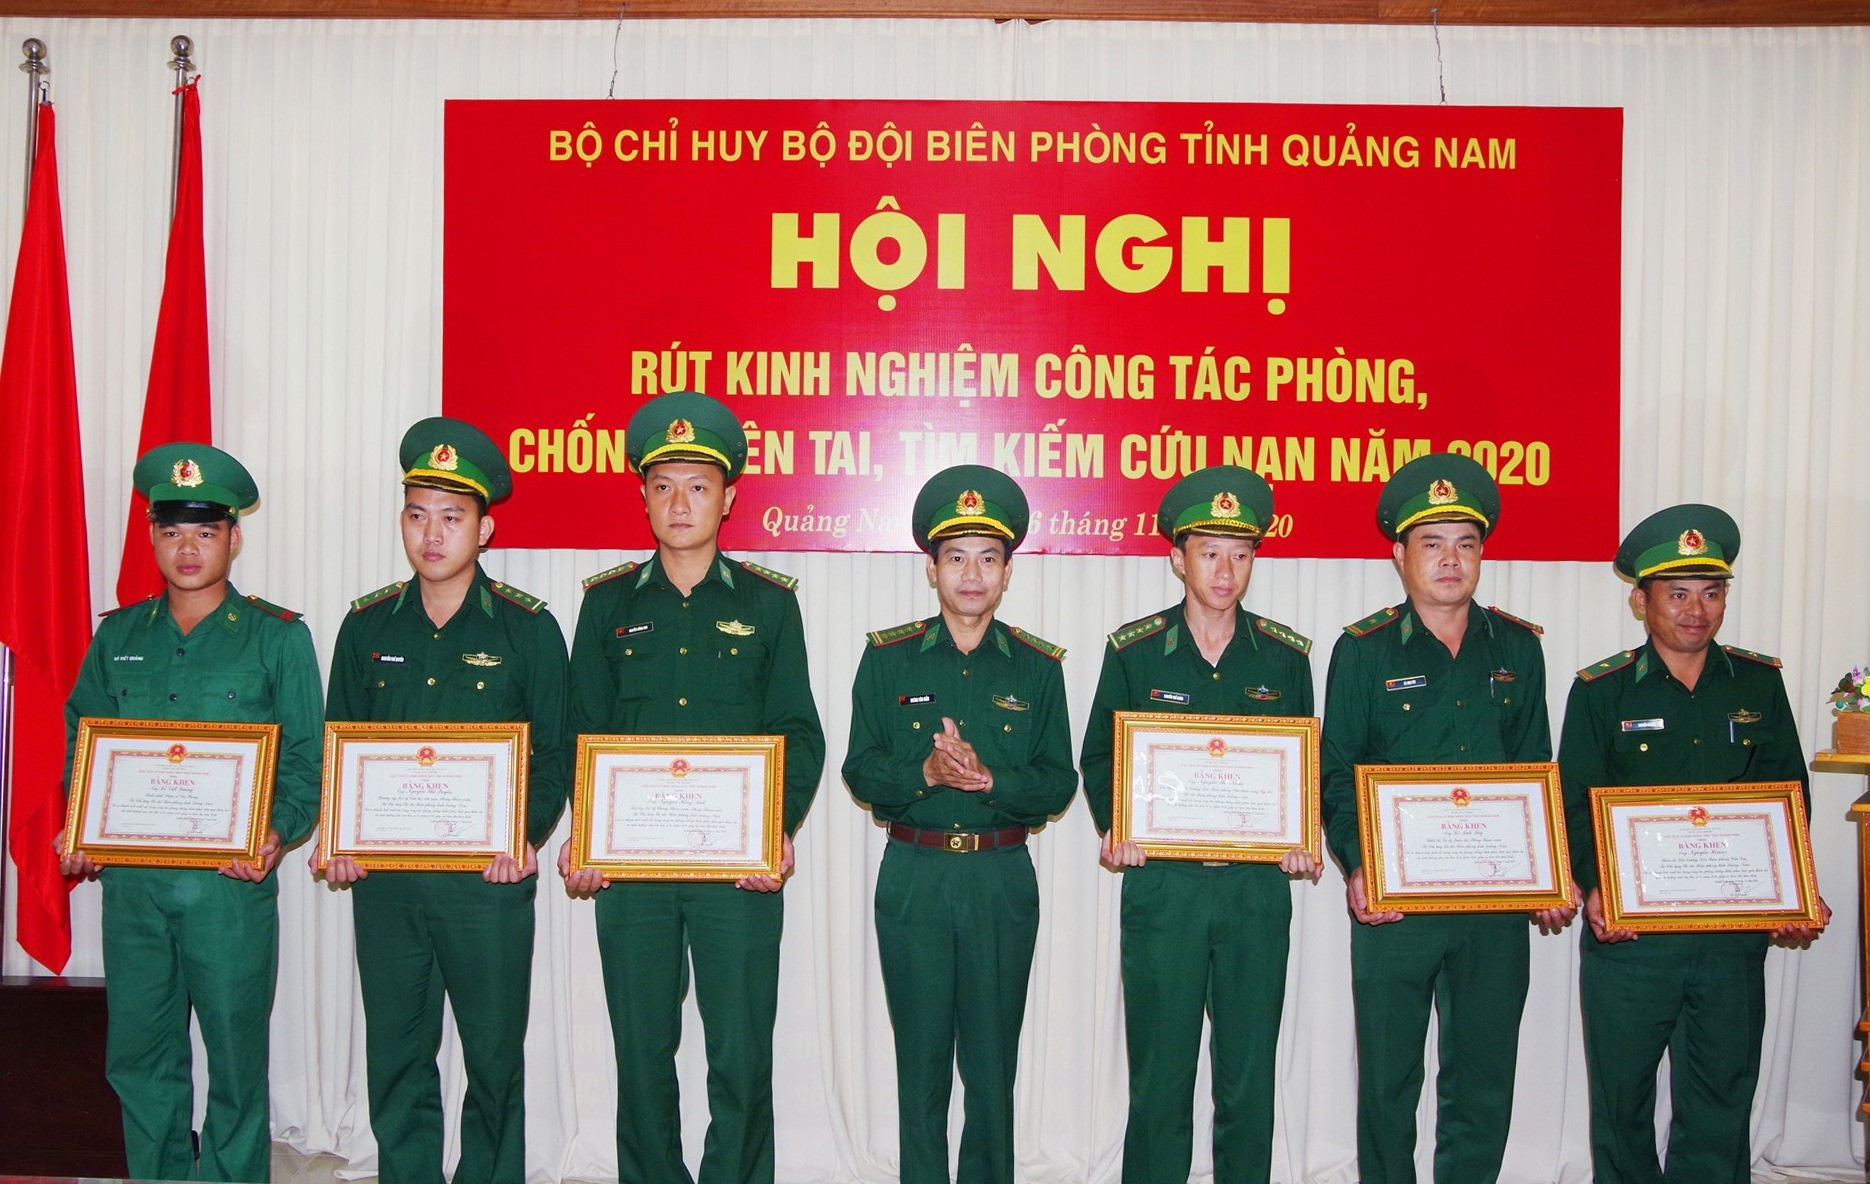 Đại tá Hoàng Văn Mẫn trao giấy khen cho các cá nhân có thành tích trong công tác phòng chống thiên tai, kiếm kiếm cứu nạn. Ảnh: H.C